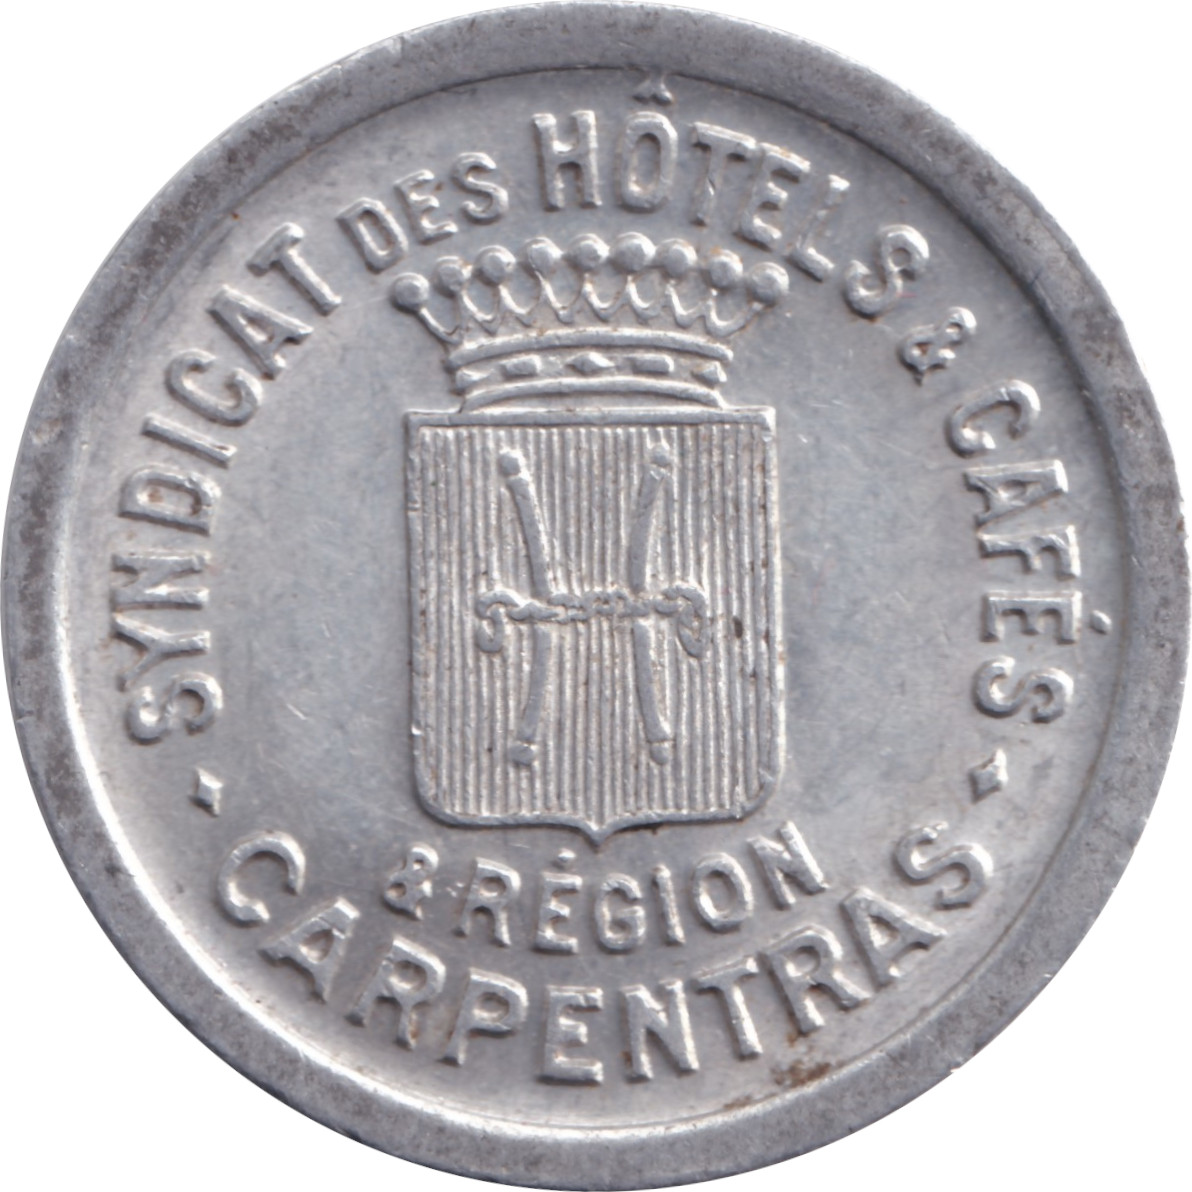 10 centimes - Carpentras